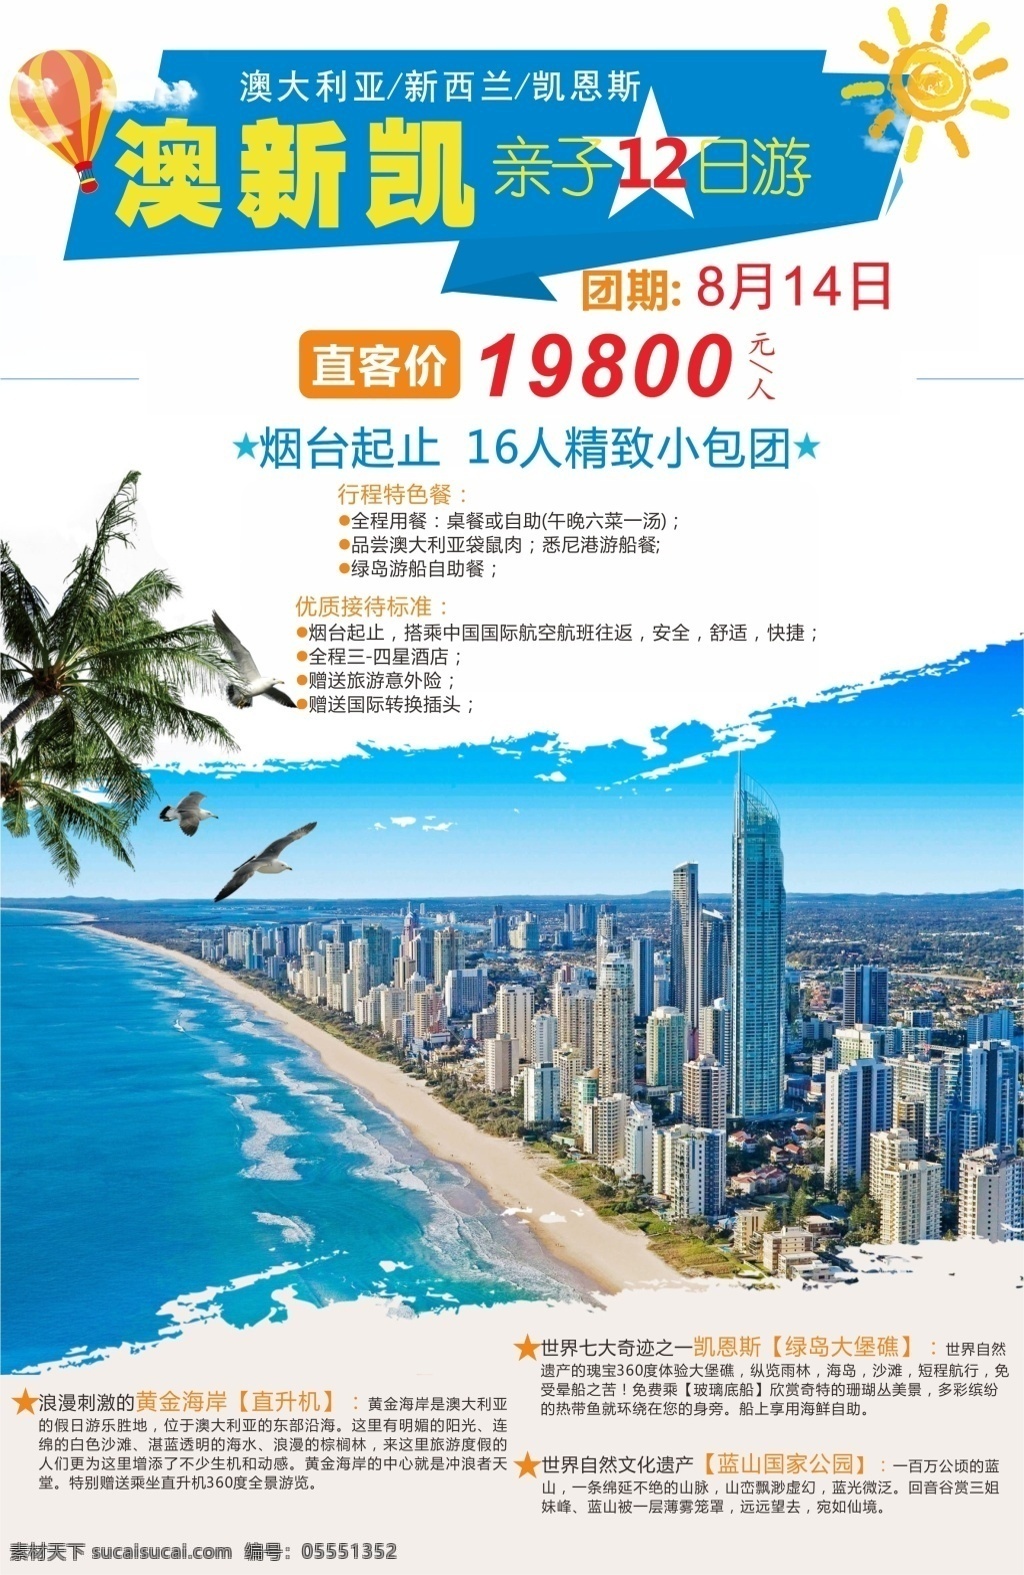 澳新凯旅游 澳大利亚 新西兰 凯恩斯 旅游 海报